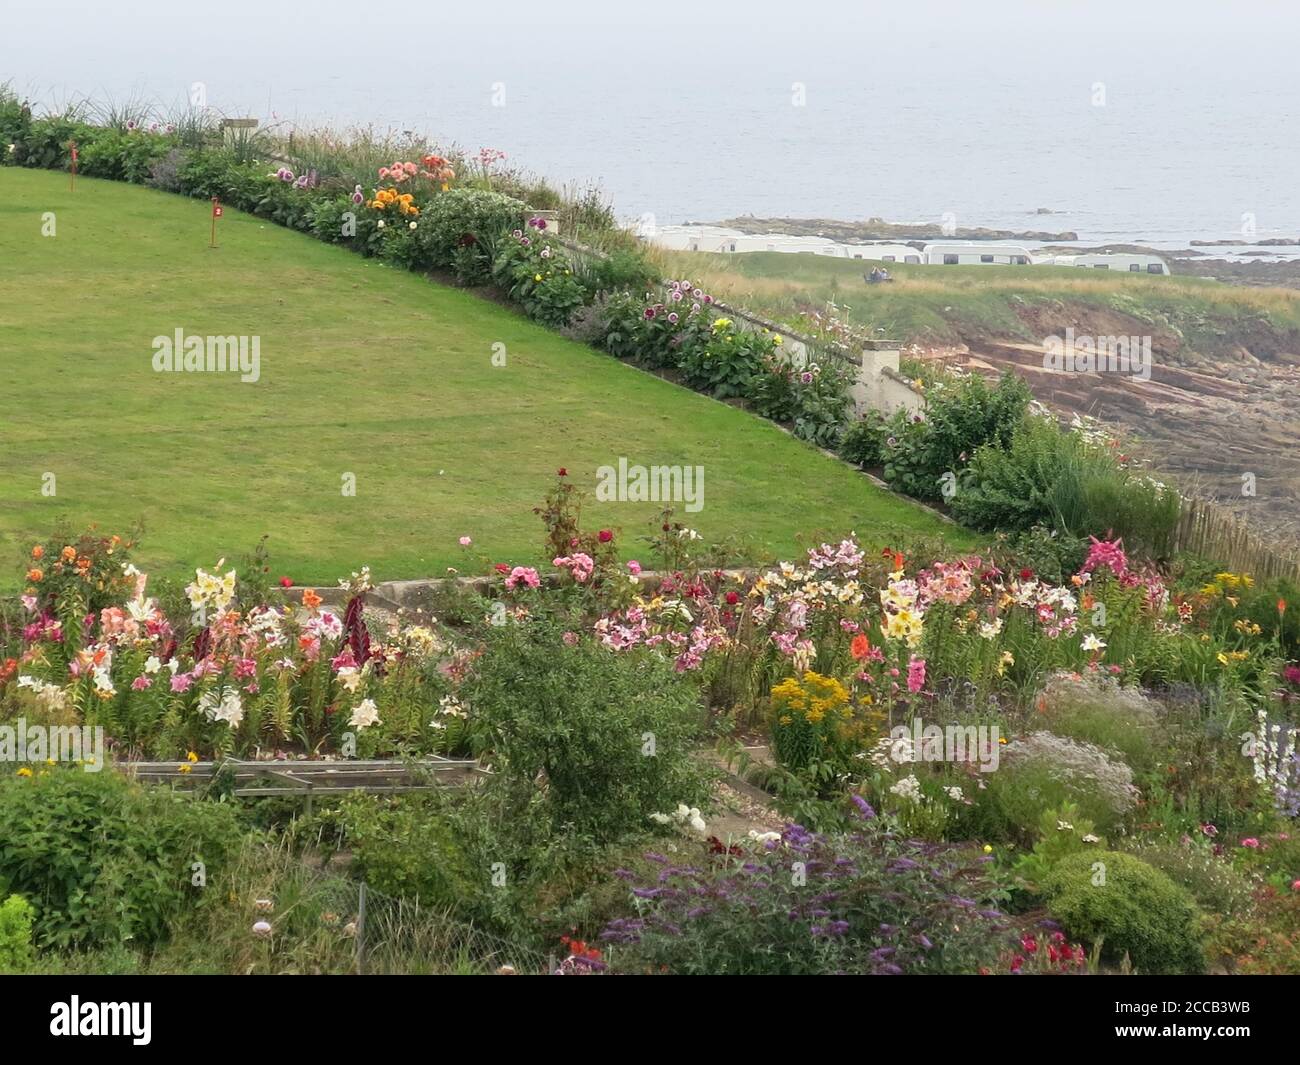 Un glorioso giardino sul mare pieno di colori estivi, adiacente al sentiero costiero presso il grazioso villaggio di pescatori Fife di Caal sulla costa orientale della Scozia. Foto Stock